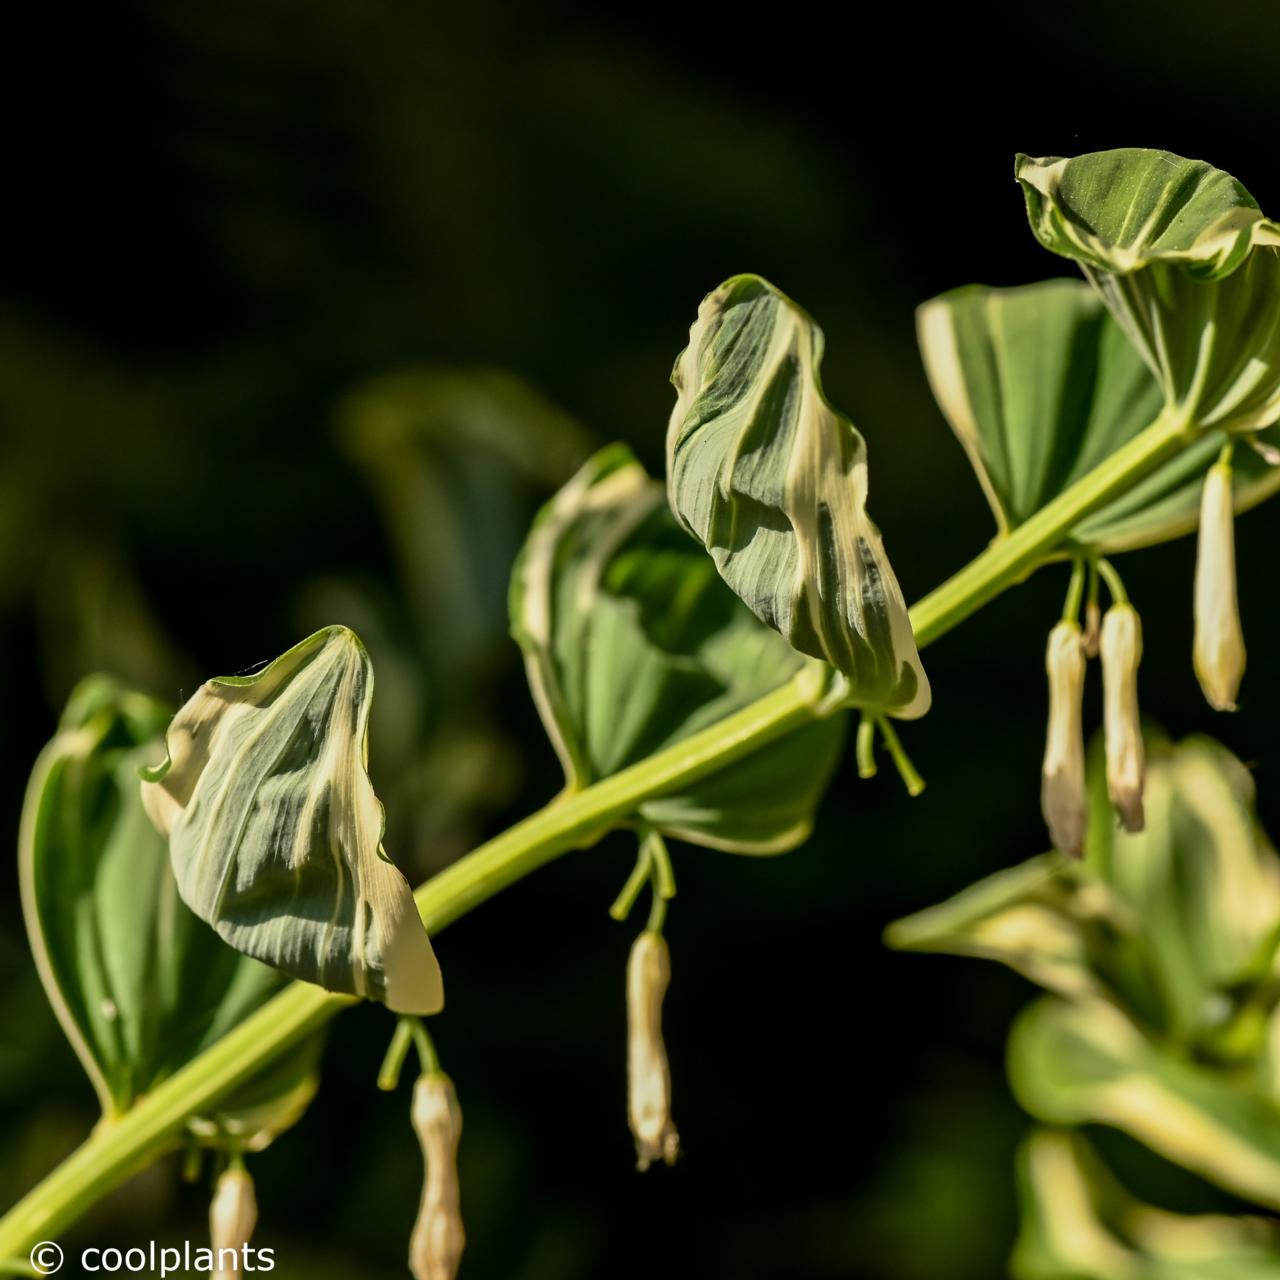 Polygonatum hybridum 'Striatum' plant